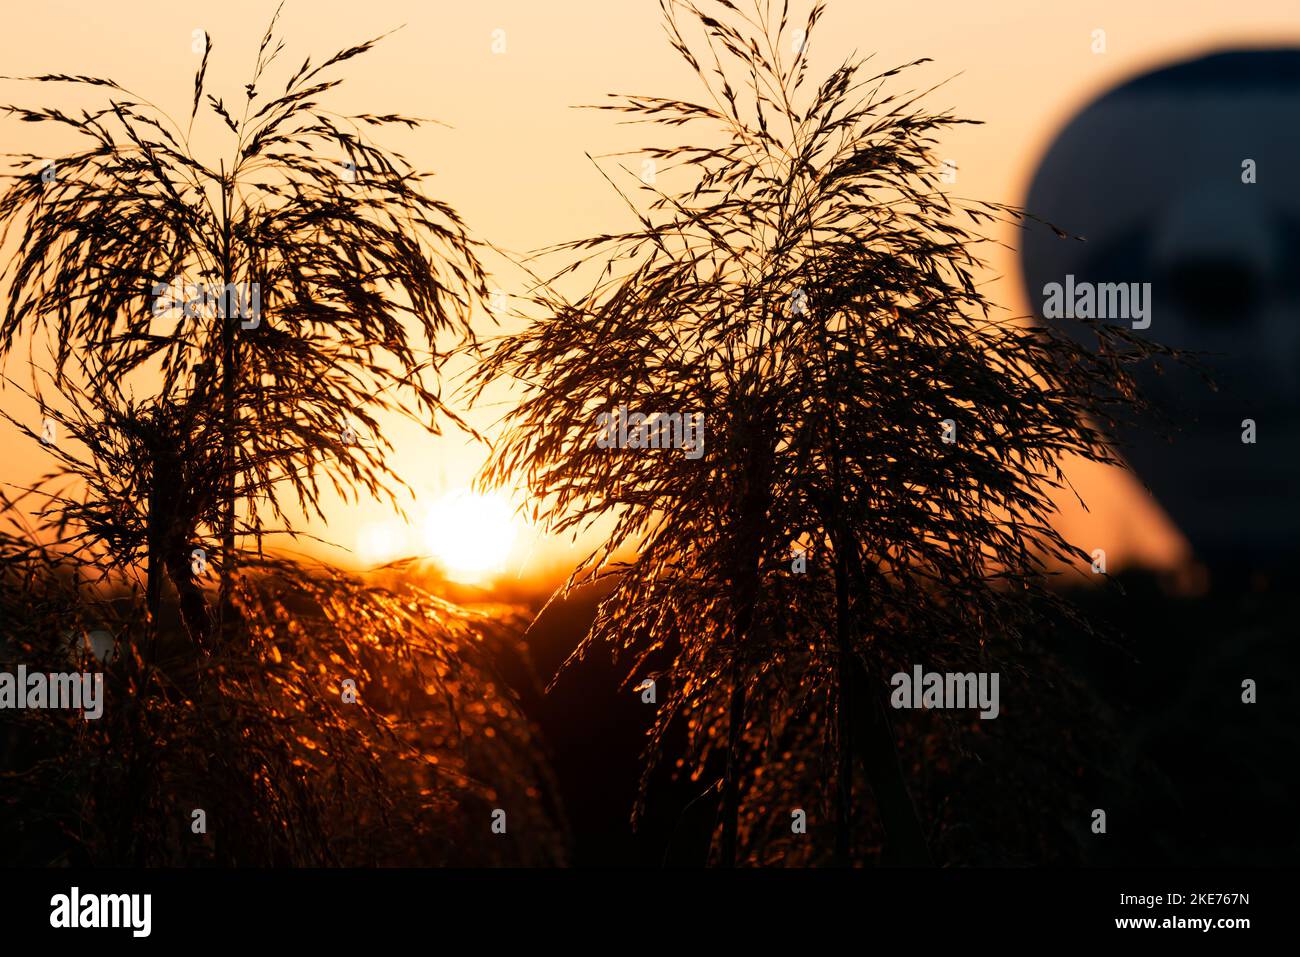 Die Sonne steigt hinter einem Heißluftballon und Gras während eines goldenen Sonnenaufgangs auf Stockfoto